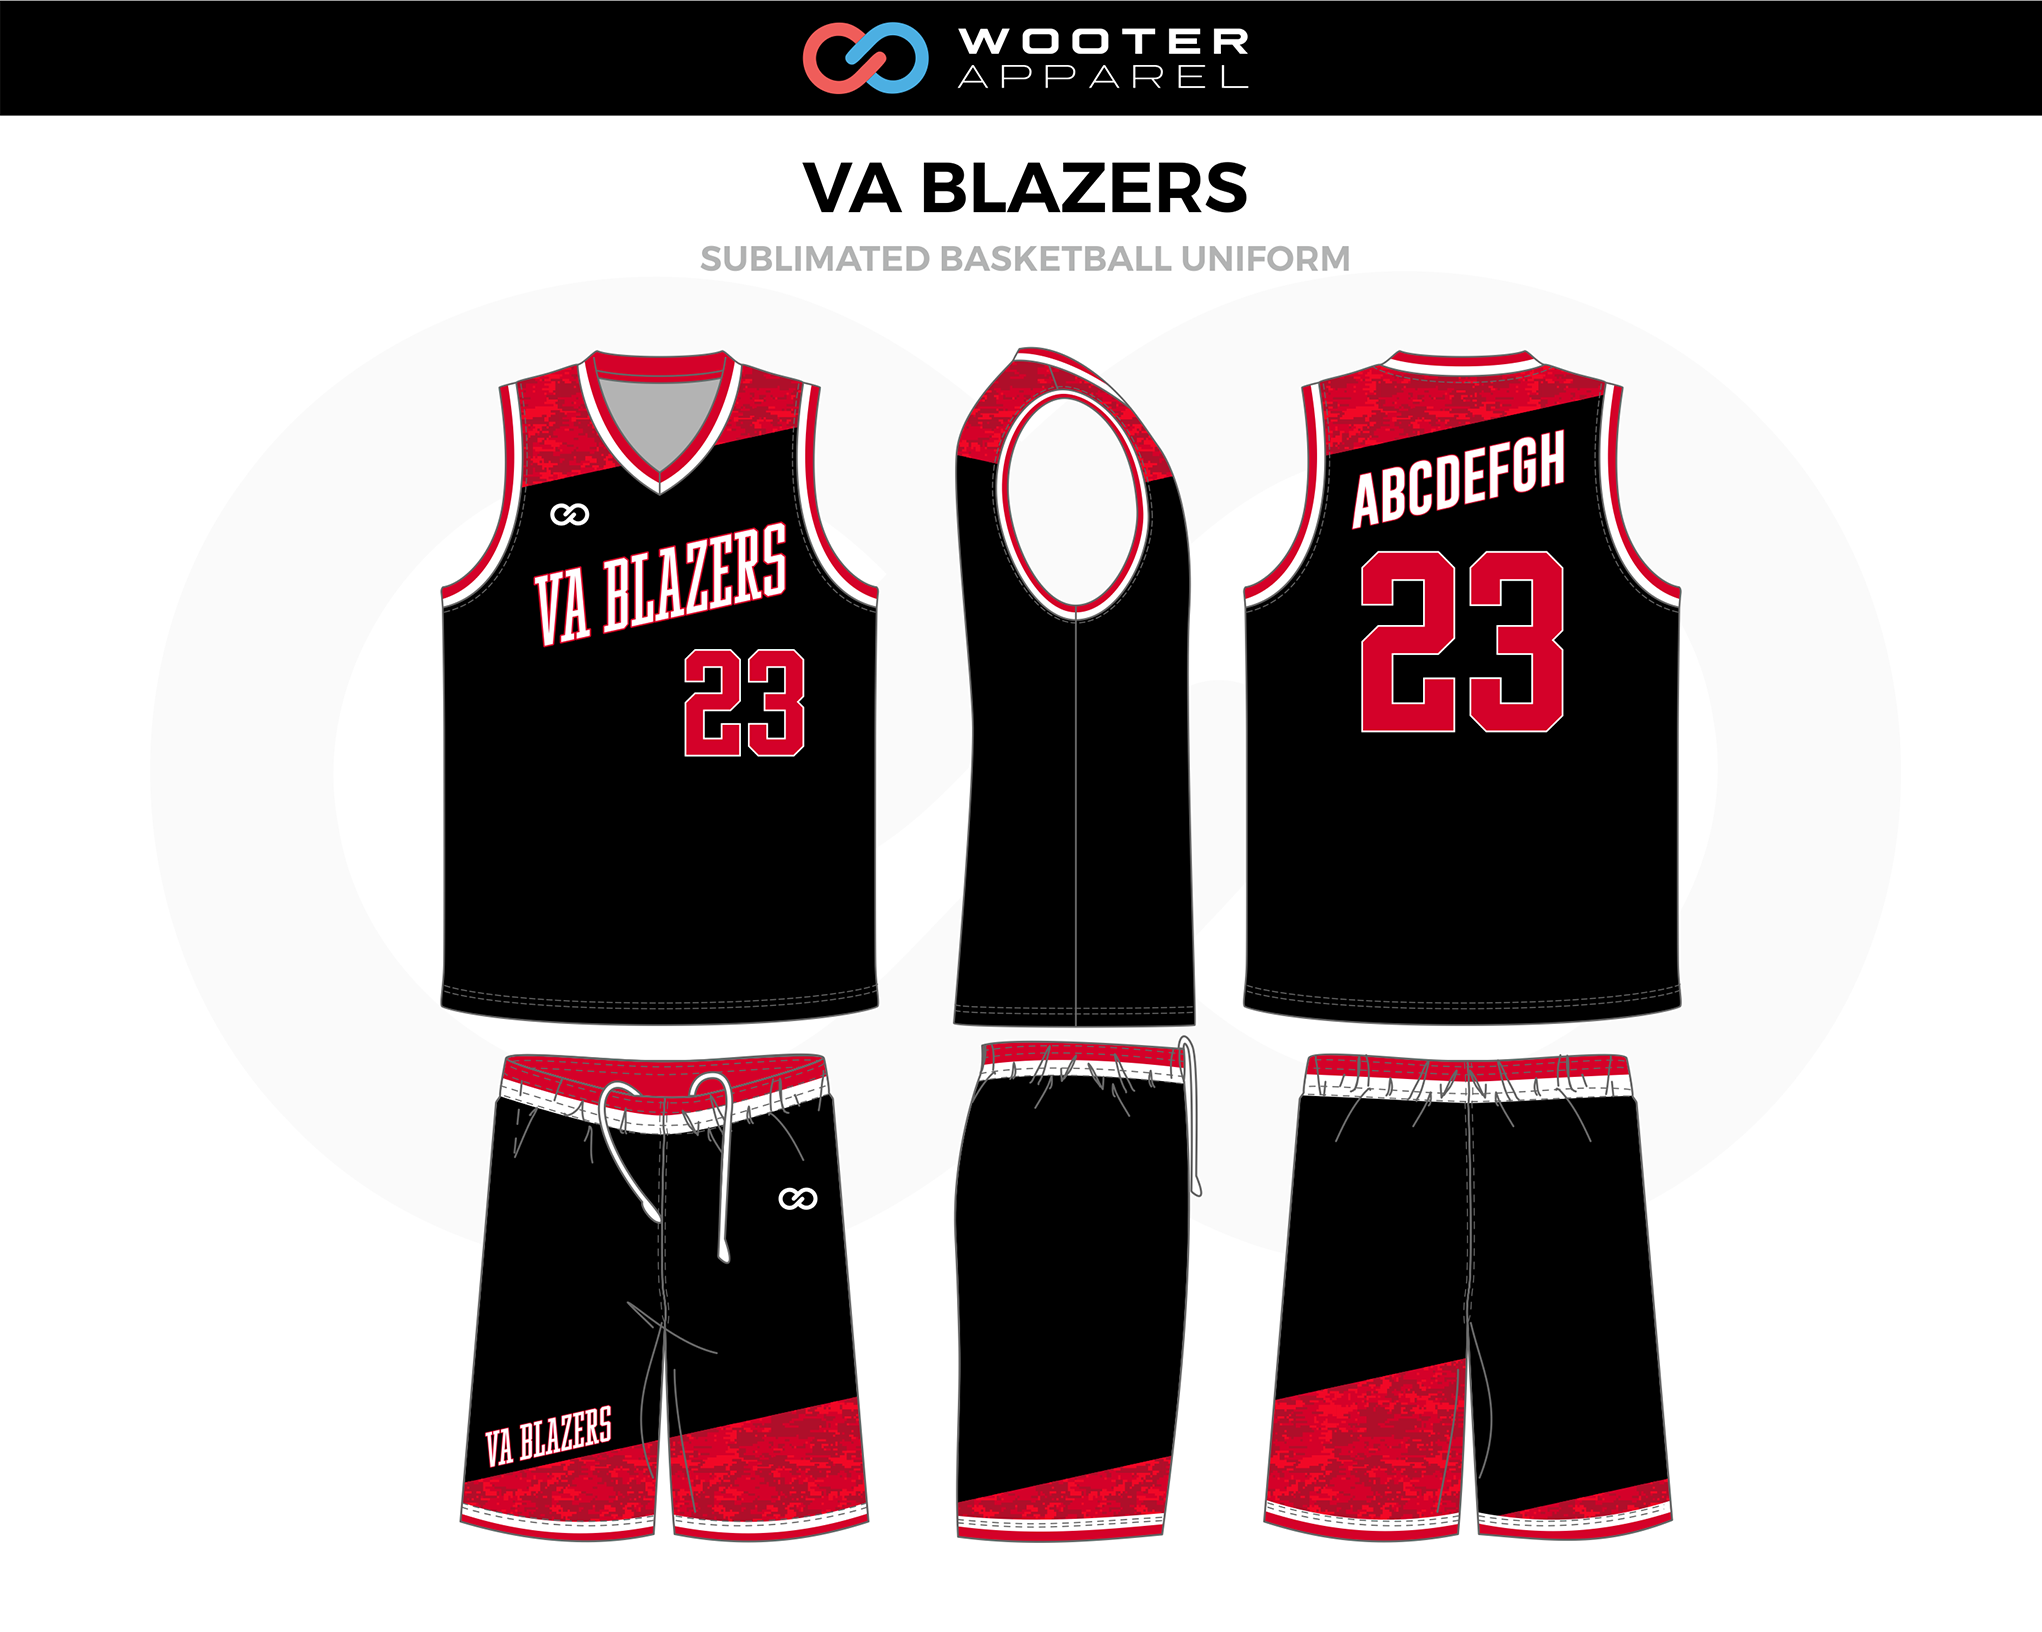 basketball uniform layout - Google Search  Basketball uniforms, Nba  uniforms, Basketball jersey